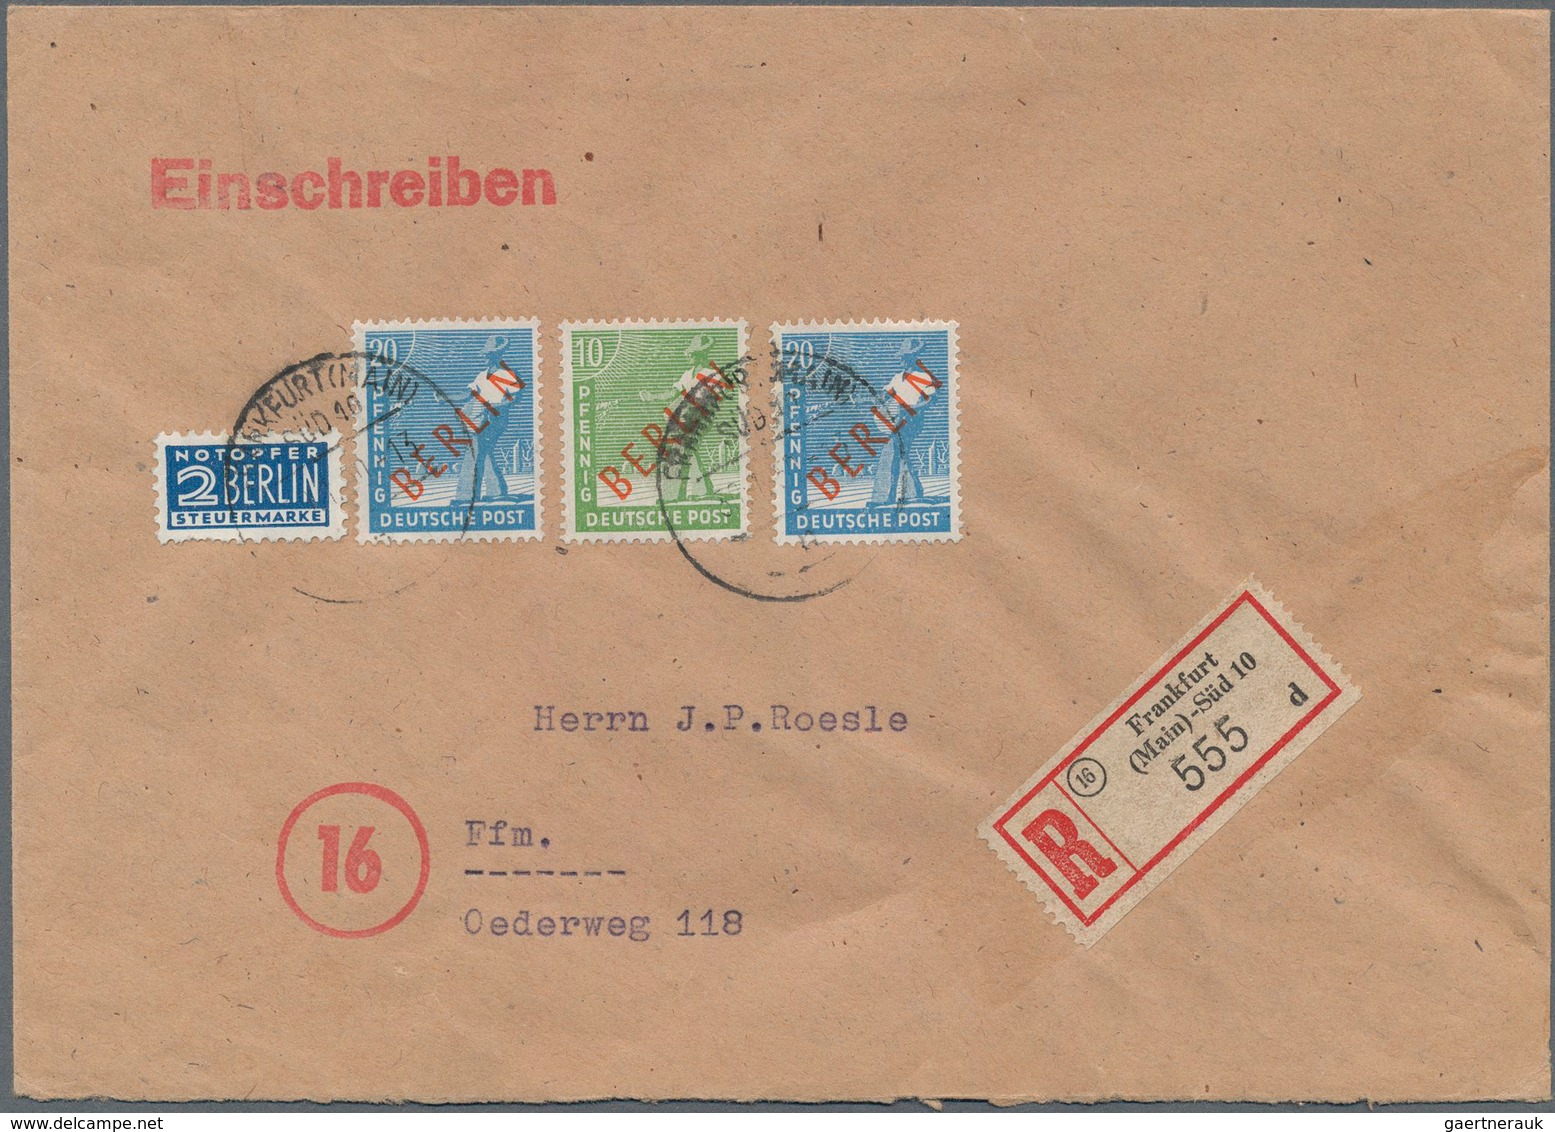 Berlin: 10 U. 2 Mal 20 Pf. Rotaufdruck Zusammen Auf Orts-R-Bf. Von Frankfurt/M. Vom 30.1.50 Sehr Sel - Covers & Documents